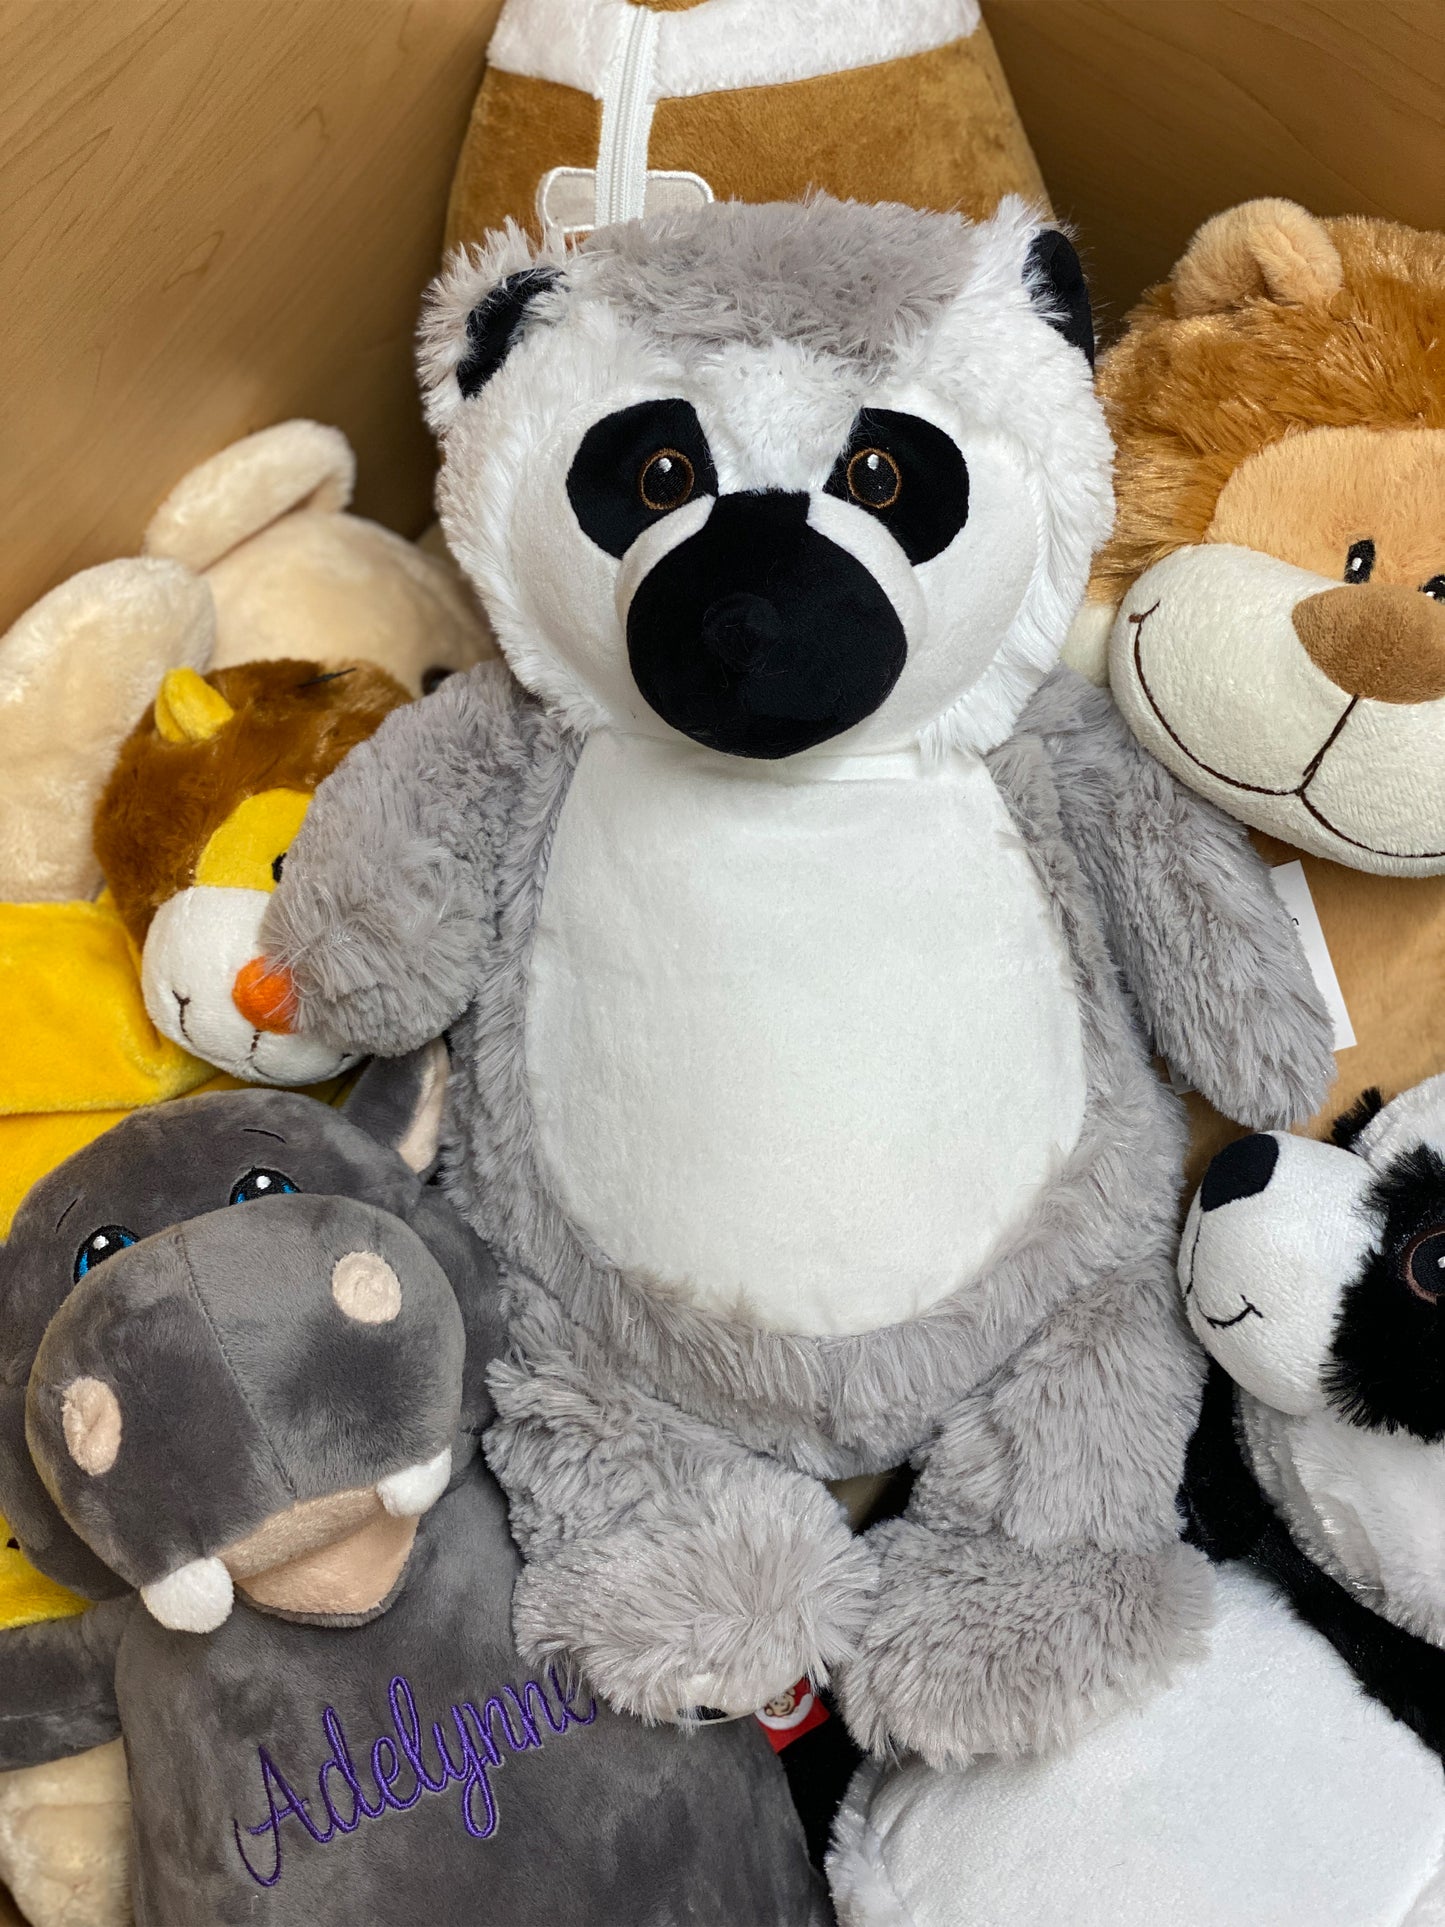 Personalized Stuffed Gray Lemur